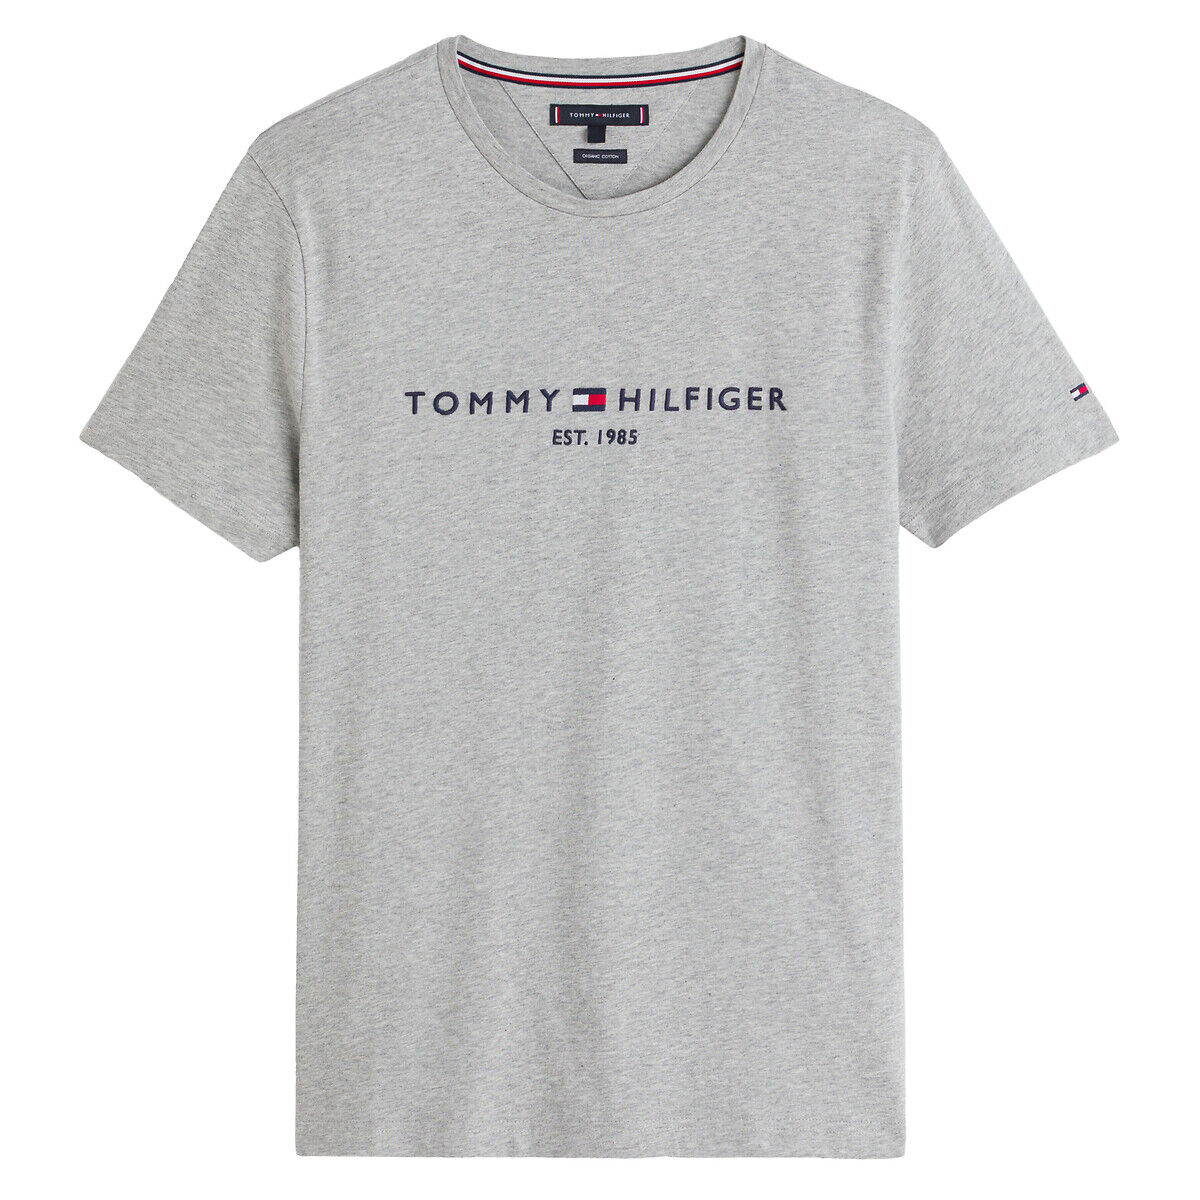 TOMMY HILFIGER T-shirt Tommy Hilfiger Flag